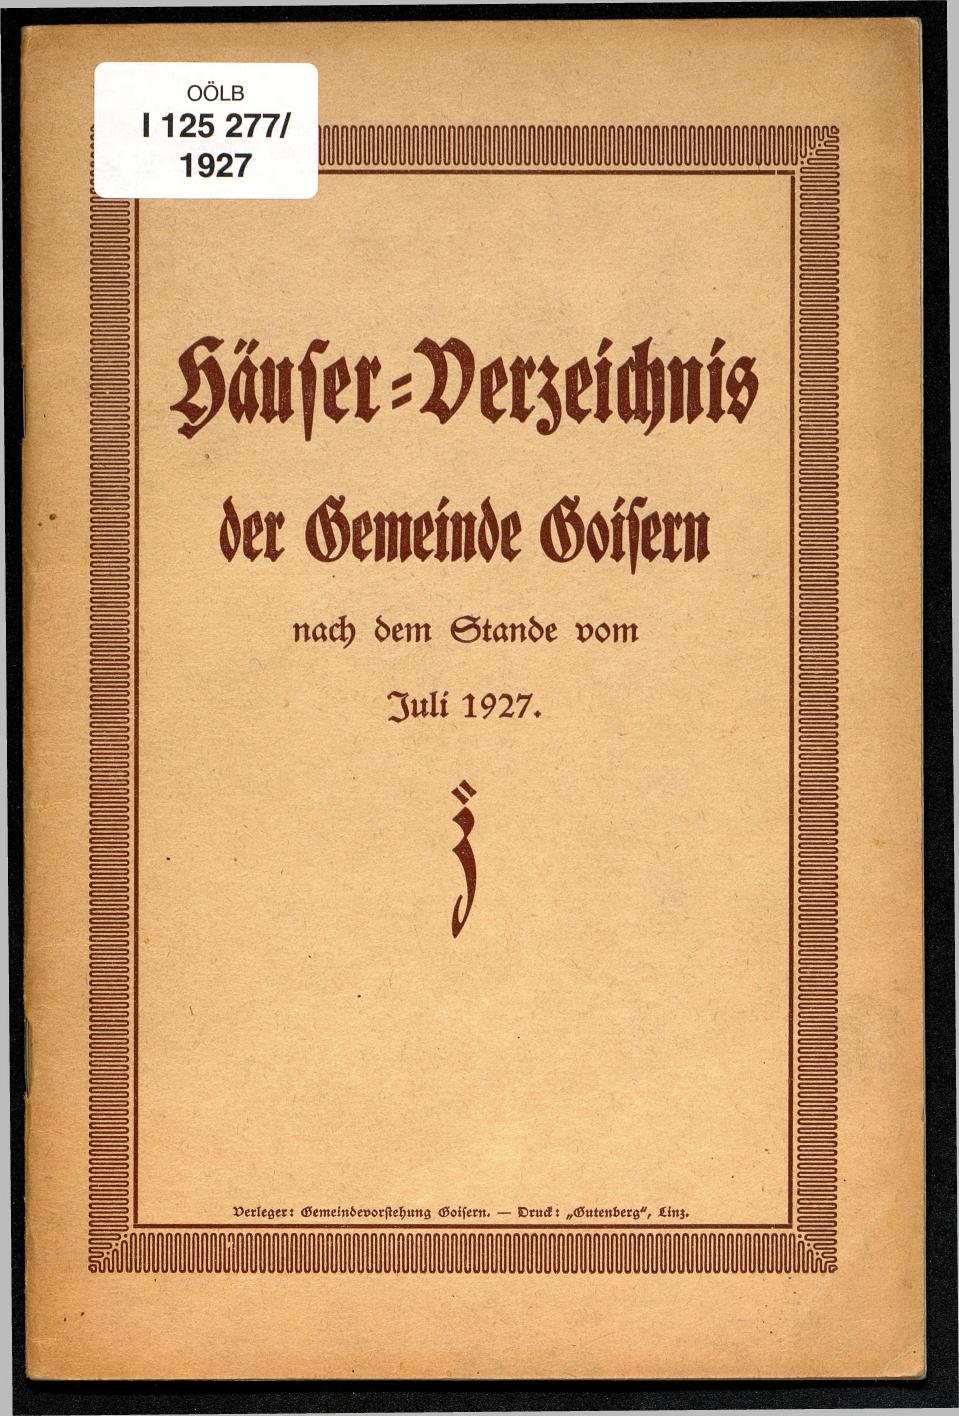 Häuser-Verzeichnis der Gemeinde Goisern nach dem Stande von Juli 1927 - Seite 1